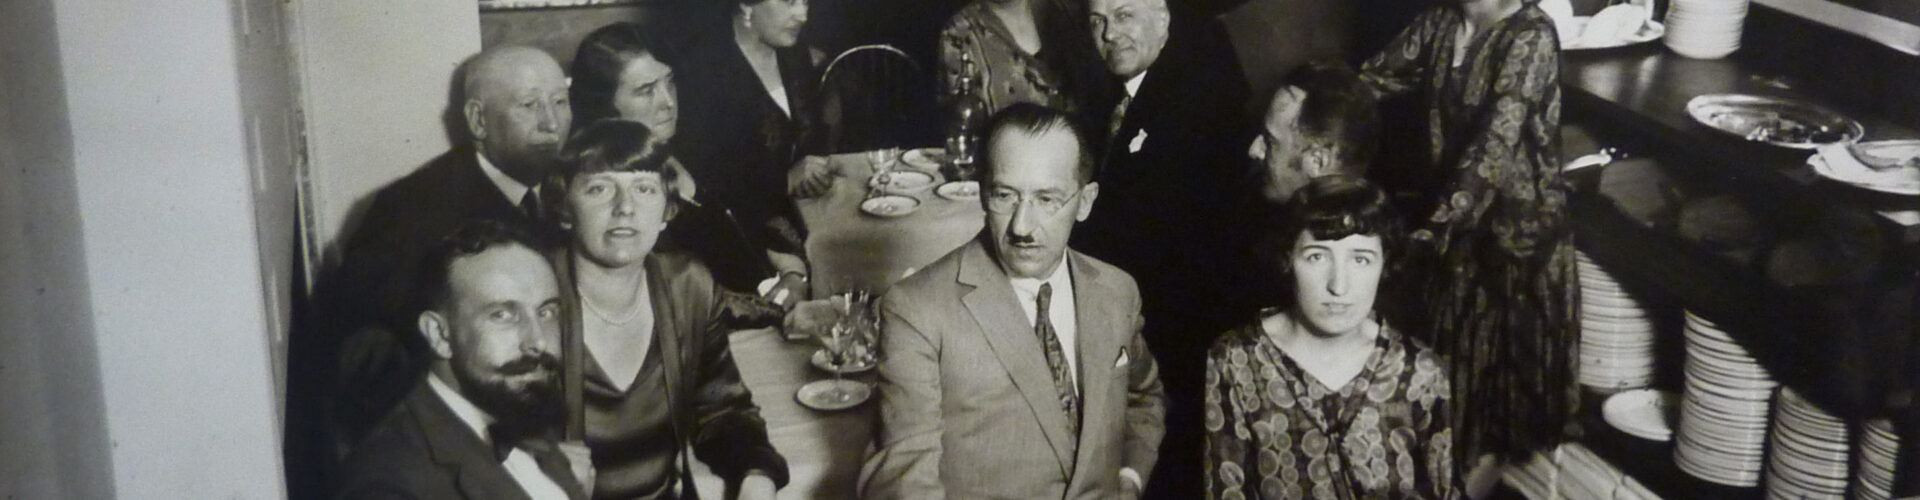 Schwarz-Weiß-Foto von Piet Mondrian mit seinen Freunden